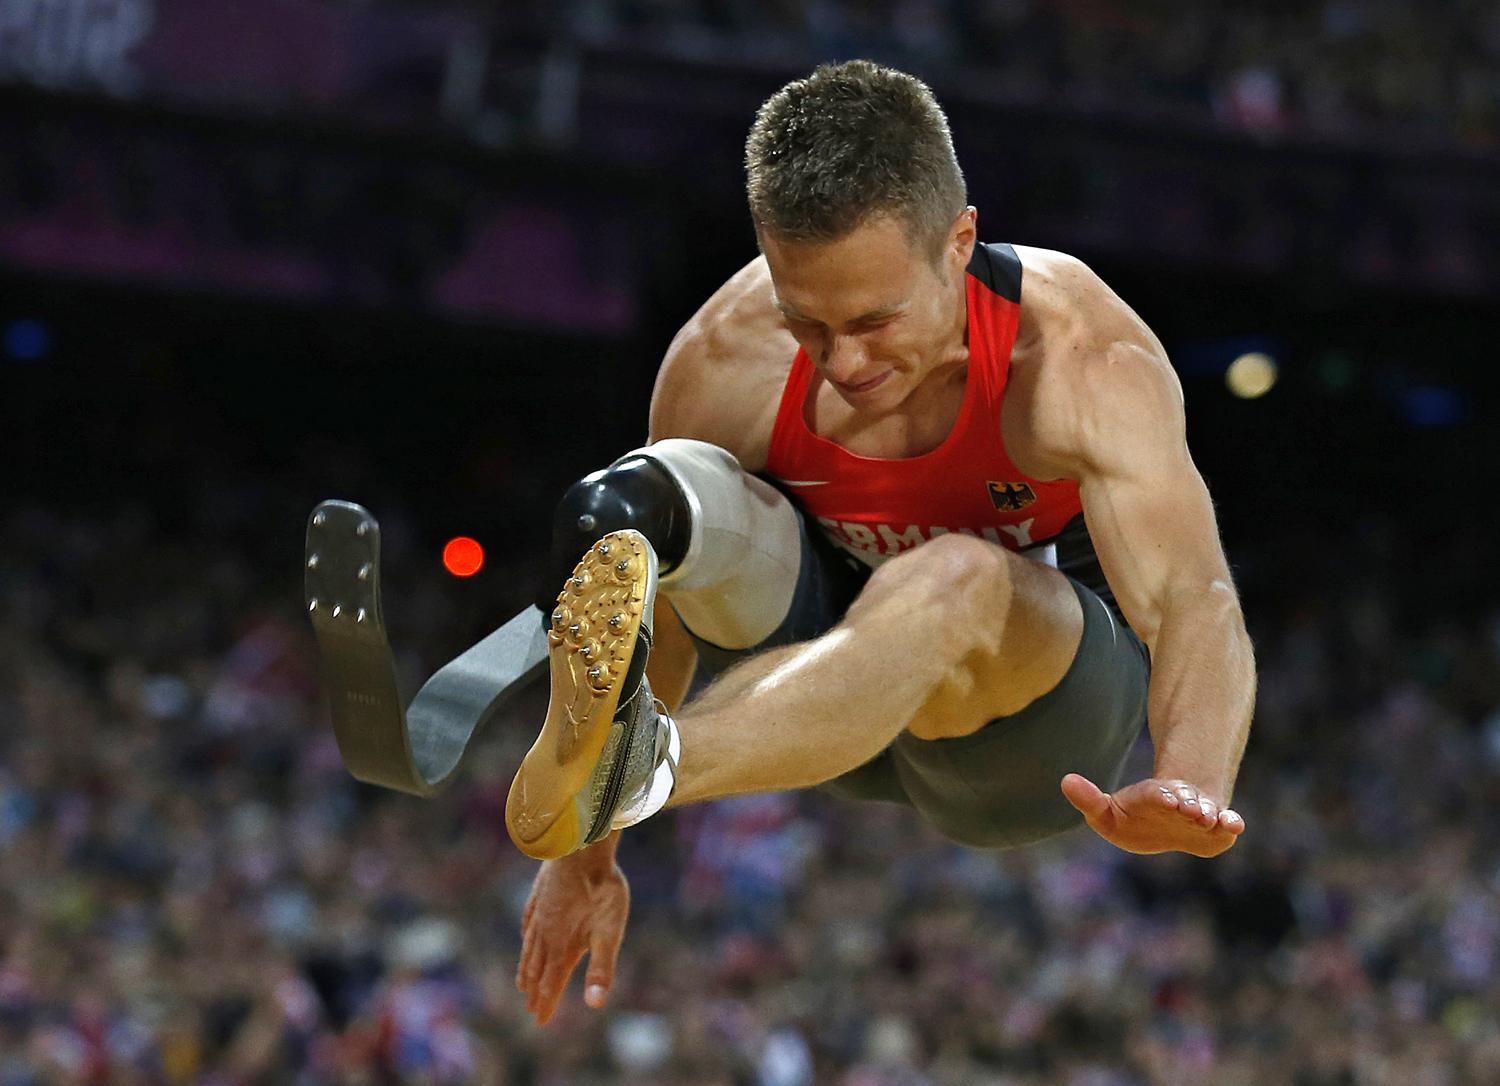 Markus Rehm aranyérmet jelentő ugrása a 2012-es paralimpiai játékokon, Londonban